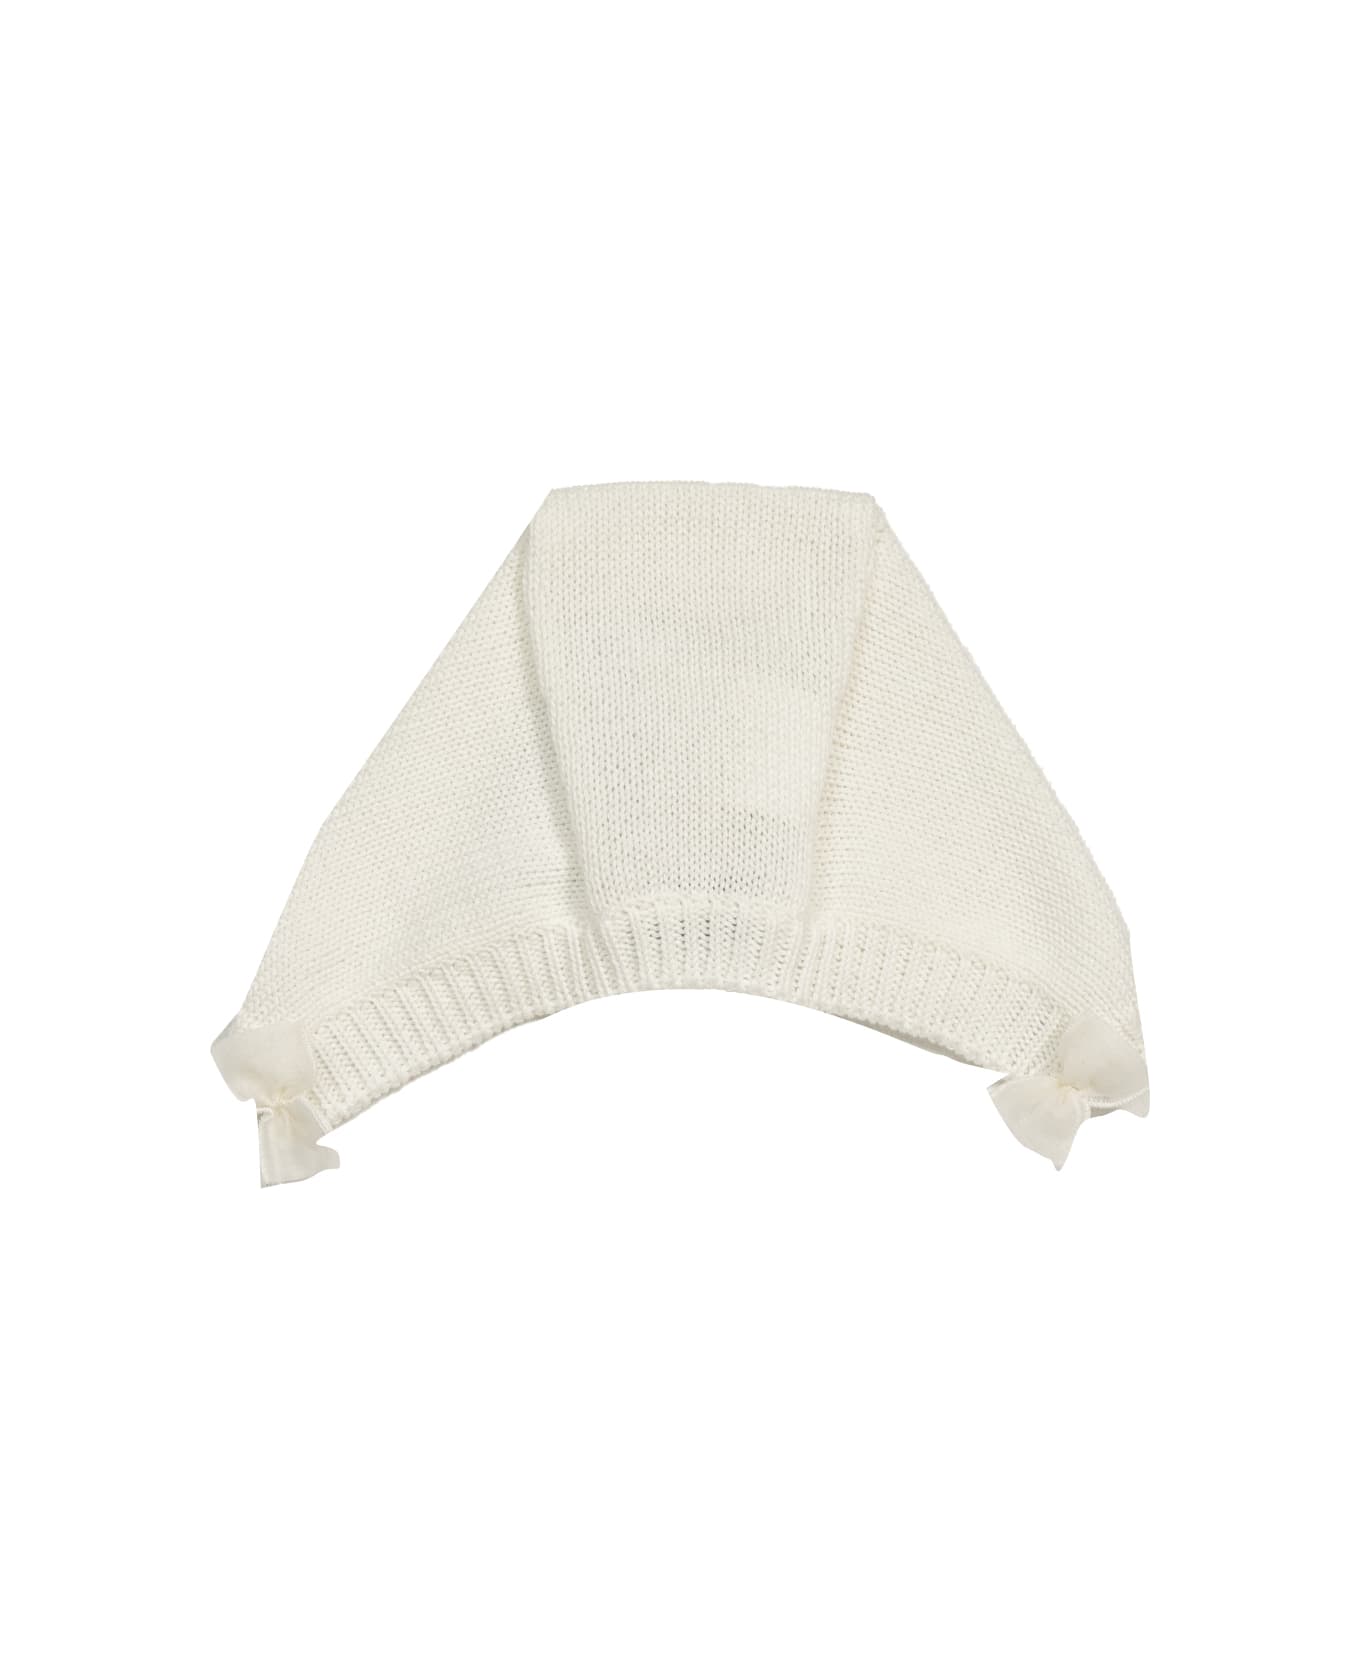 Piccola Giuggiola Cotton Knit Ear Cap canotier - White